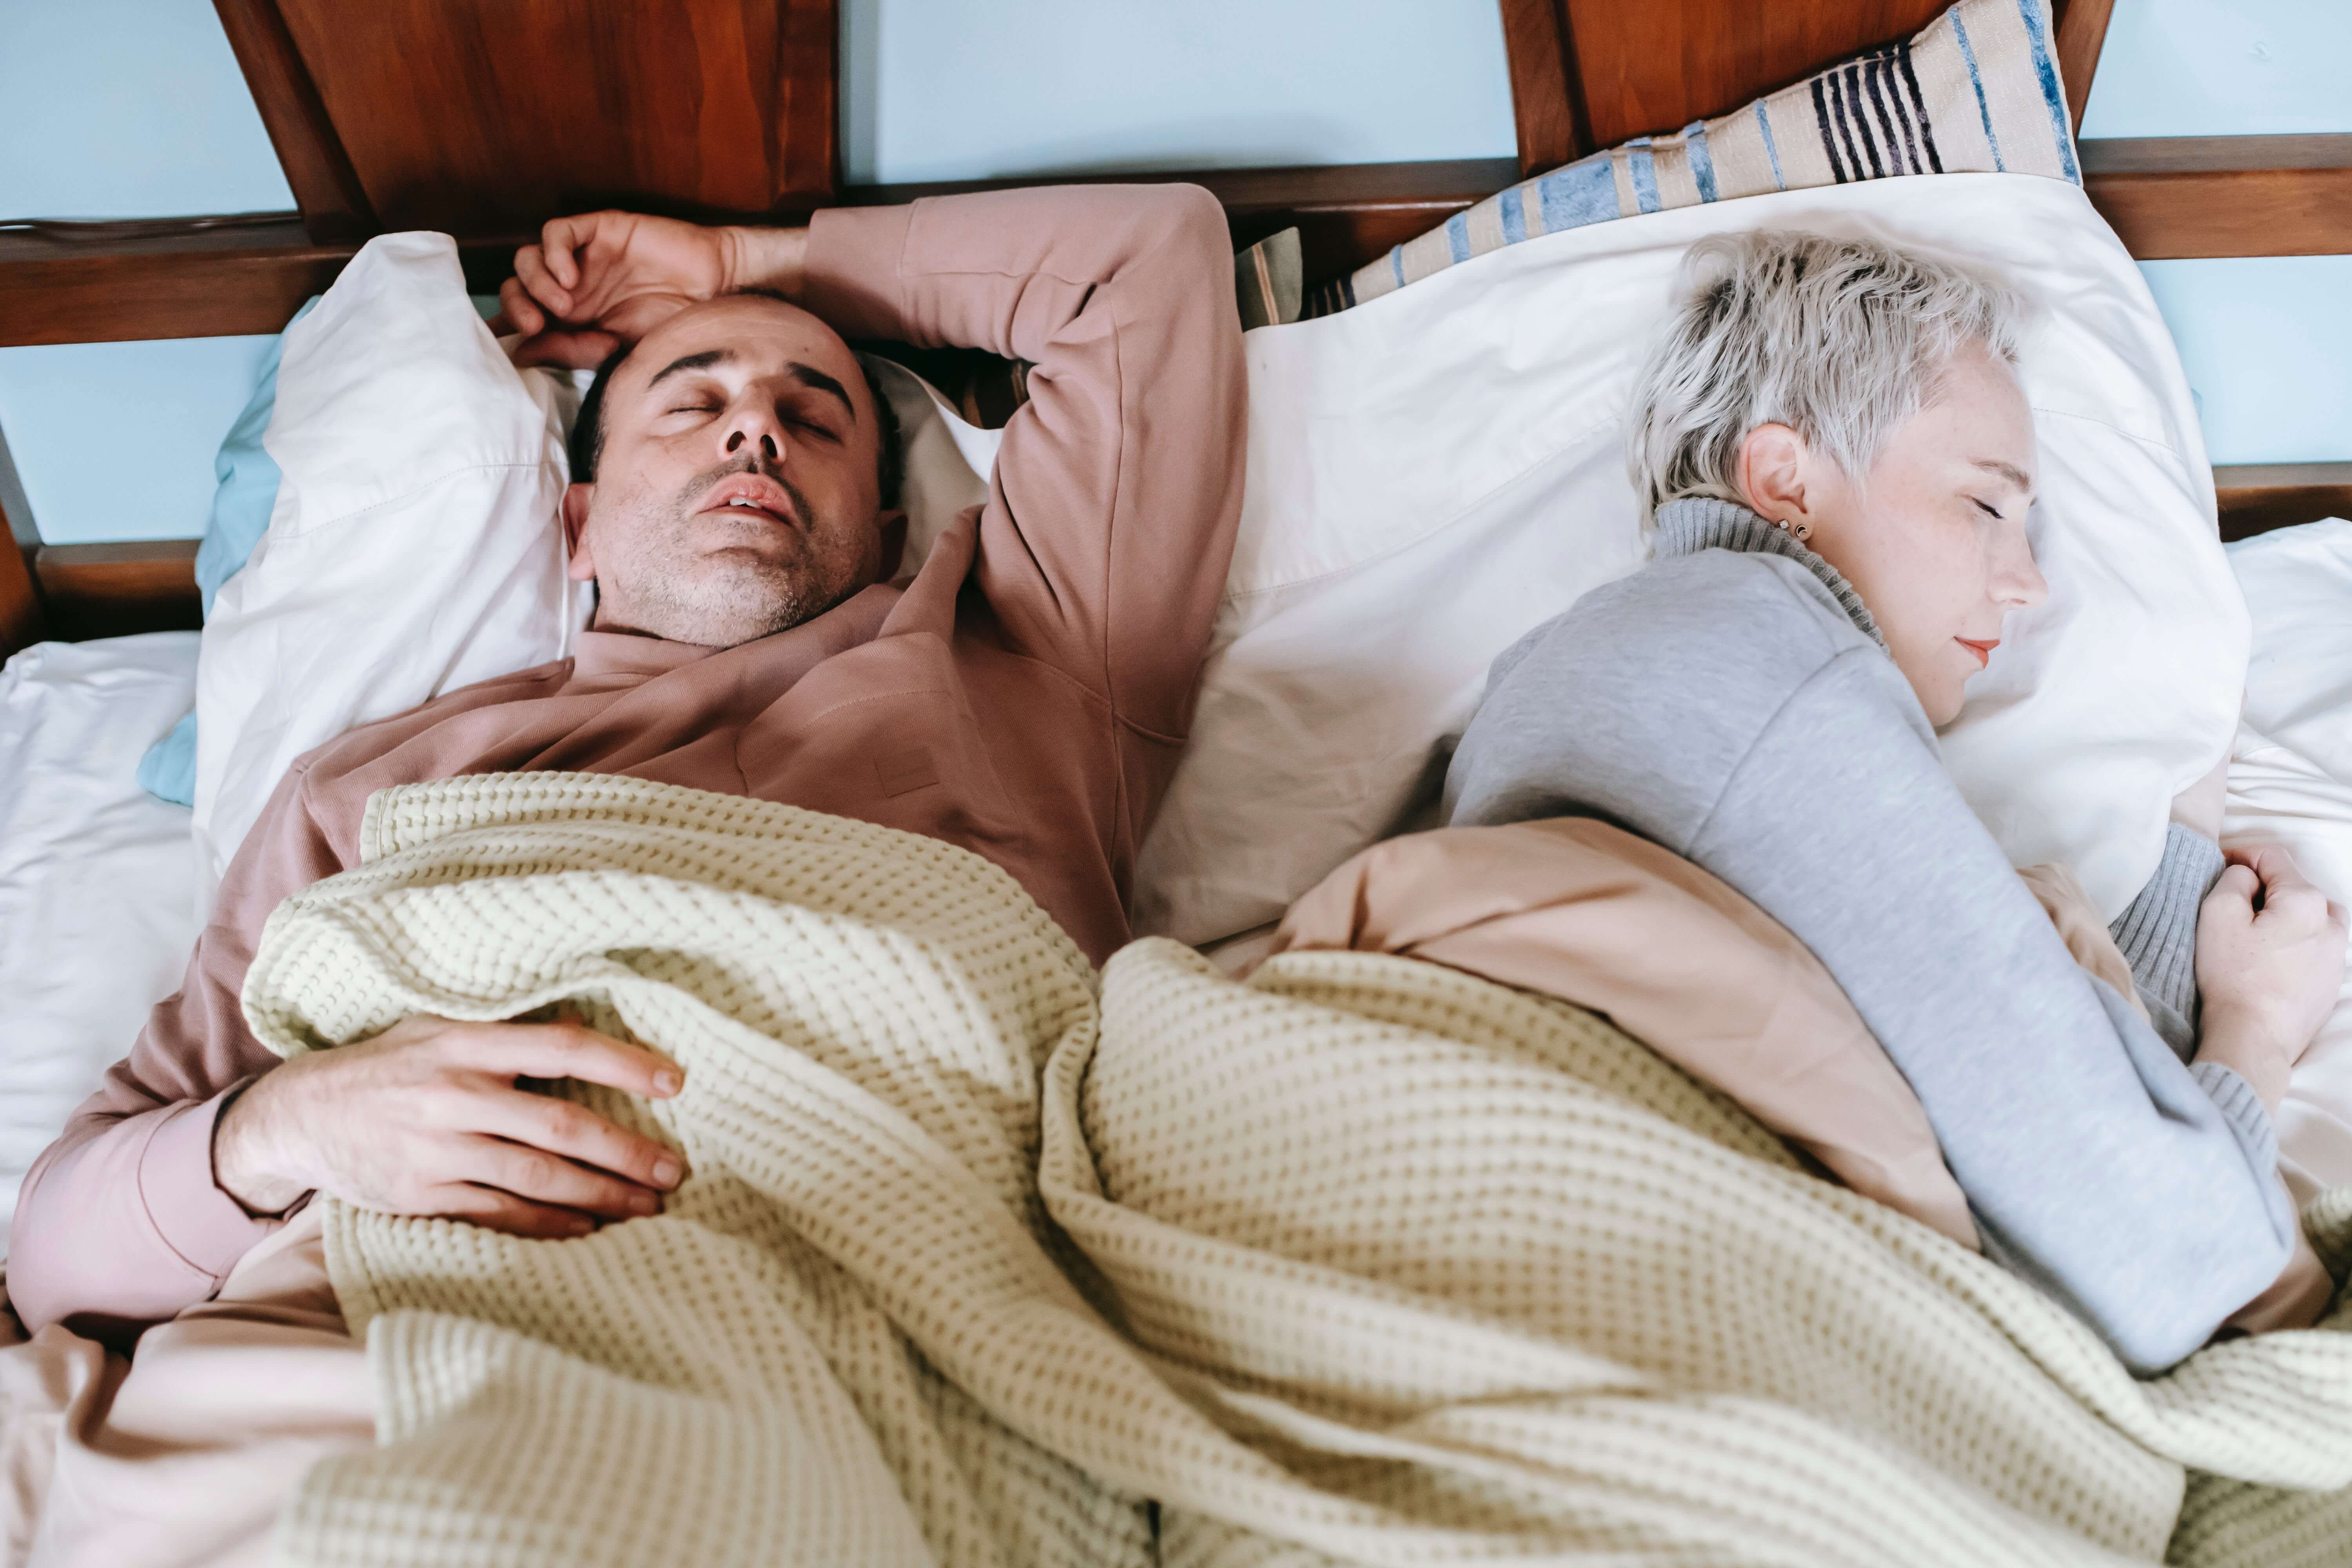 Frauen schlafen durchschnittlich länger als Männer: Sind die körperlichen Unterschiede ursächlich?